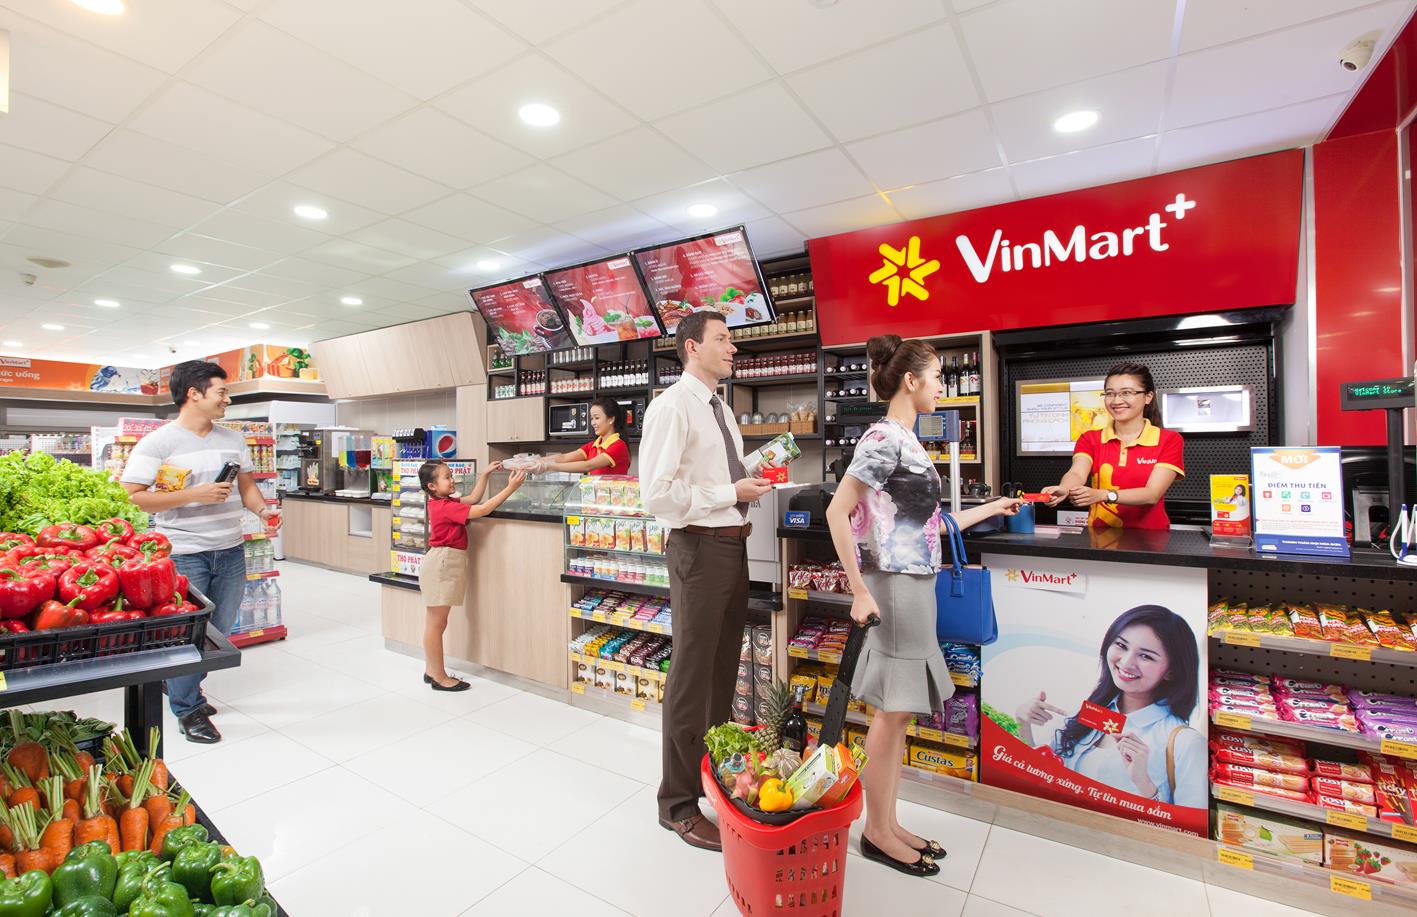 Siêu thị VinMart cung cấp dịch vụ mua sắm chuyên nghiệp